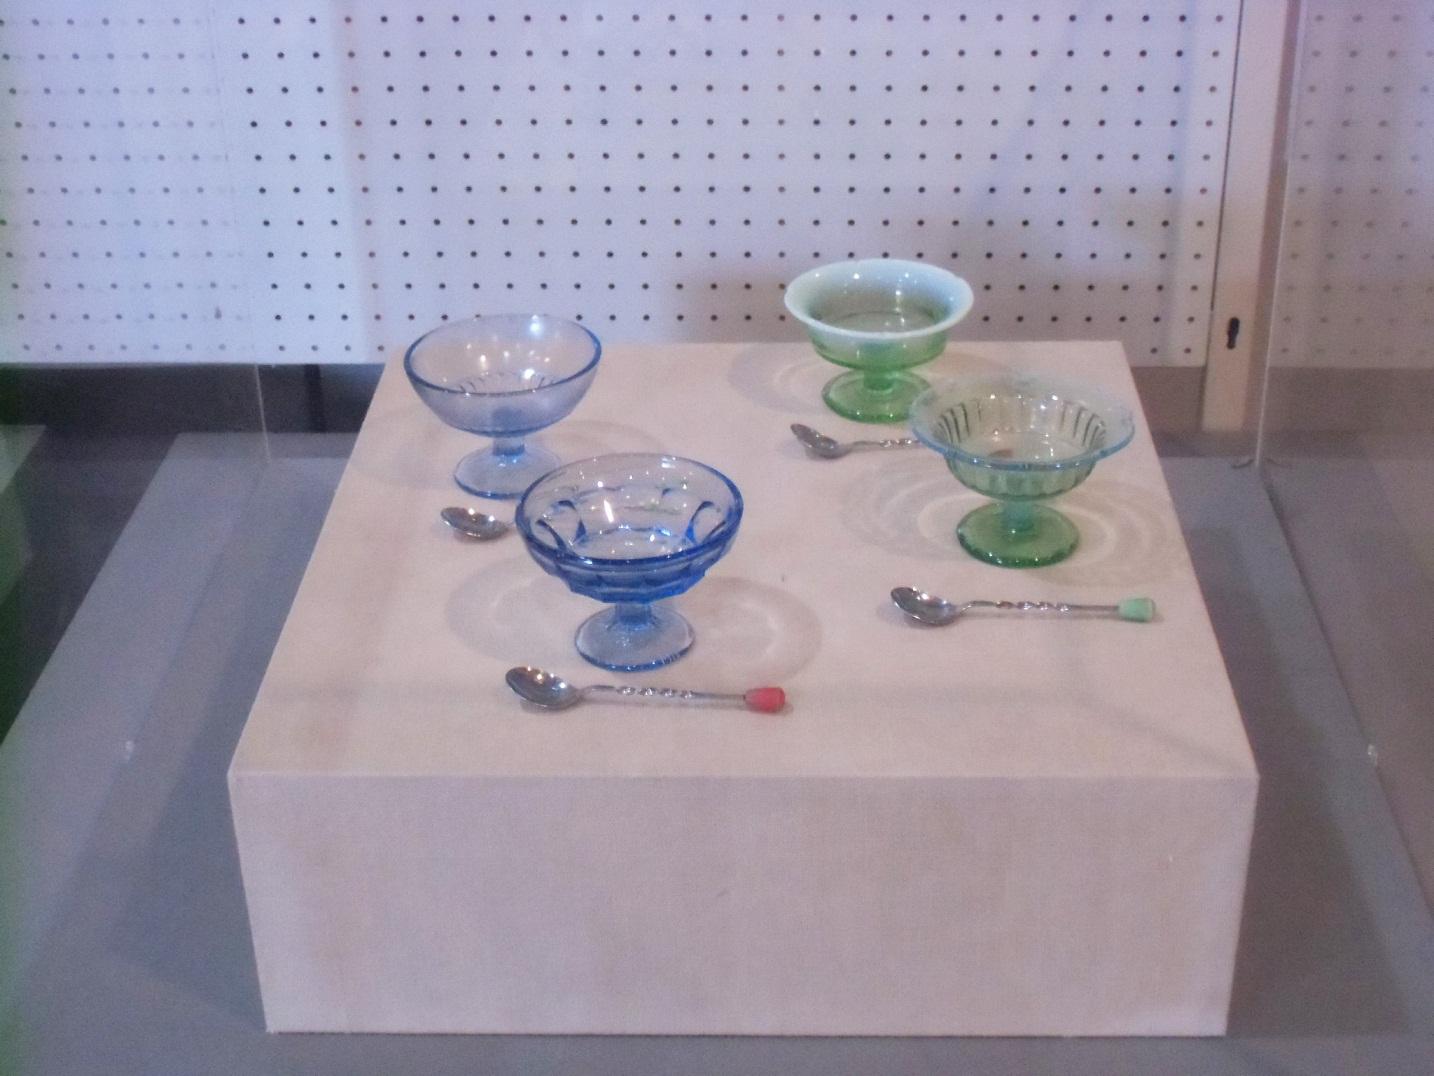 4組のかき氷を入れる青と緑のガラスの器とスプーンが並べられた写真